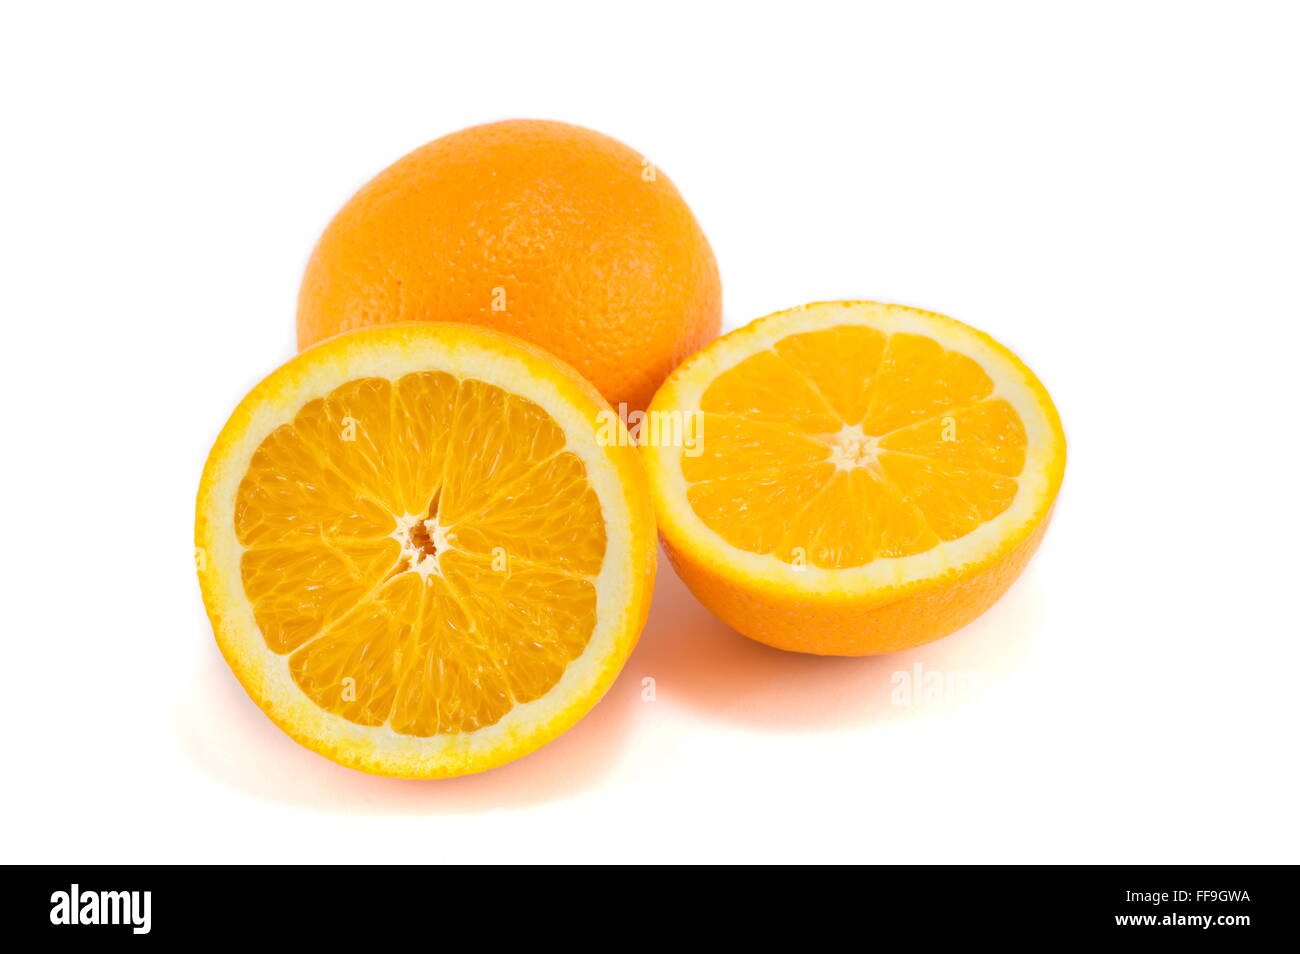 halved and whole orange isolated on white Stock Photo